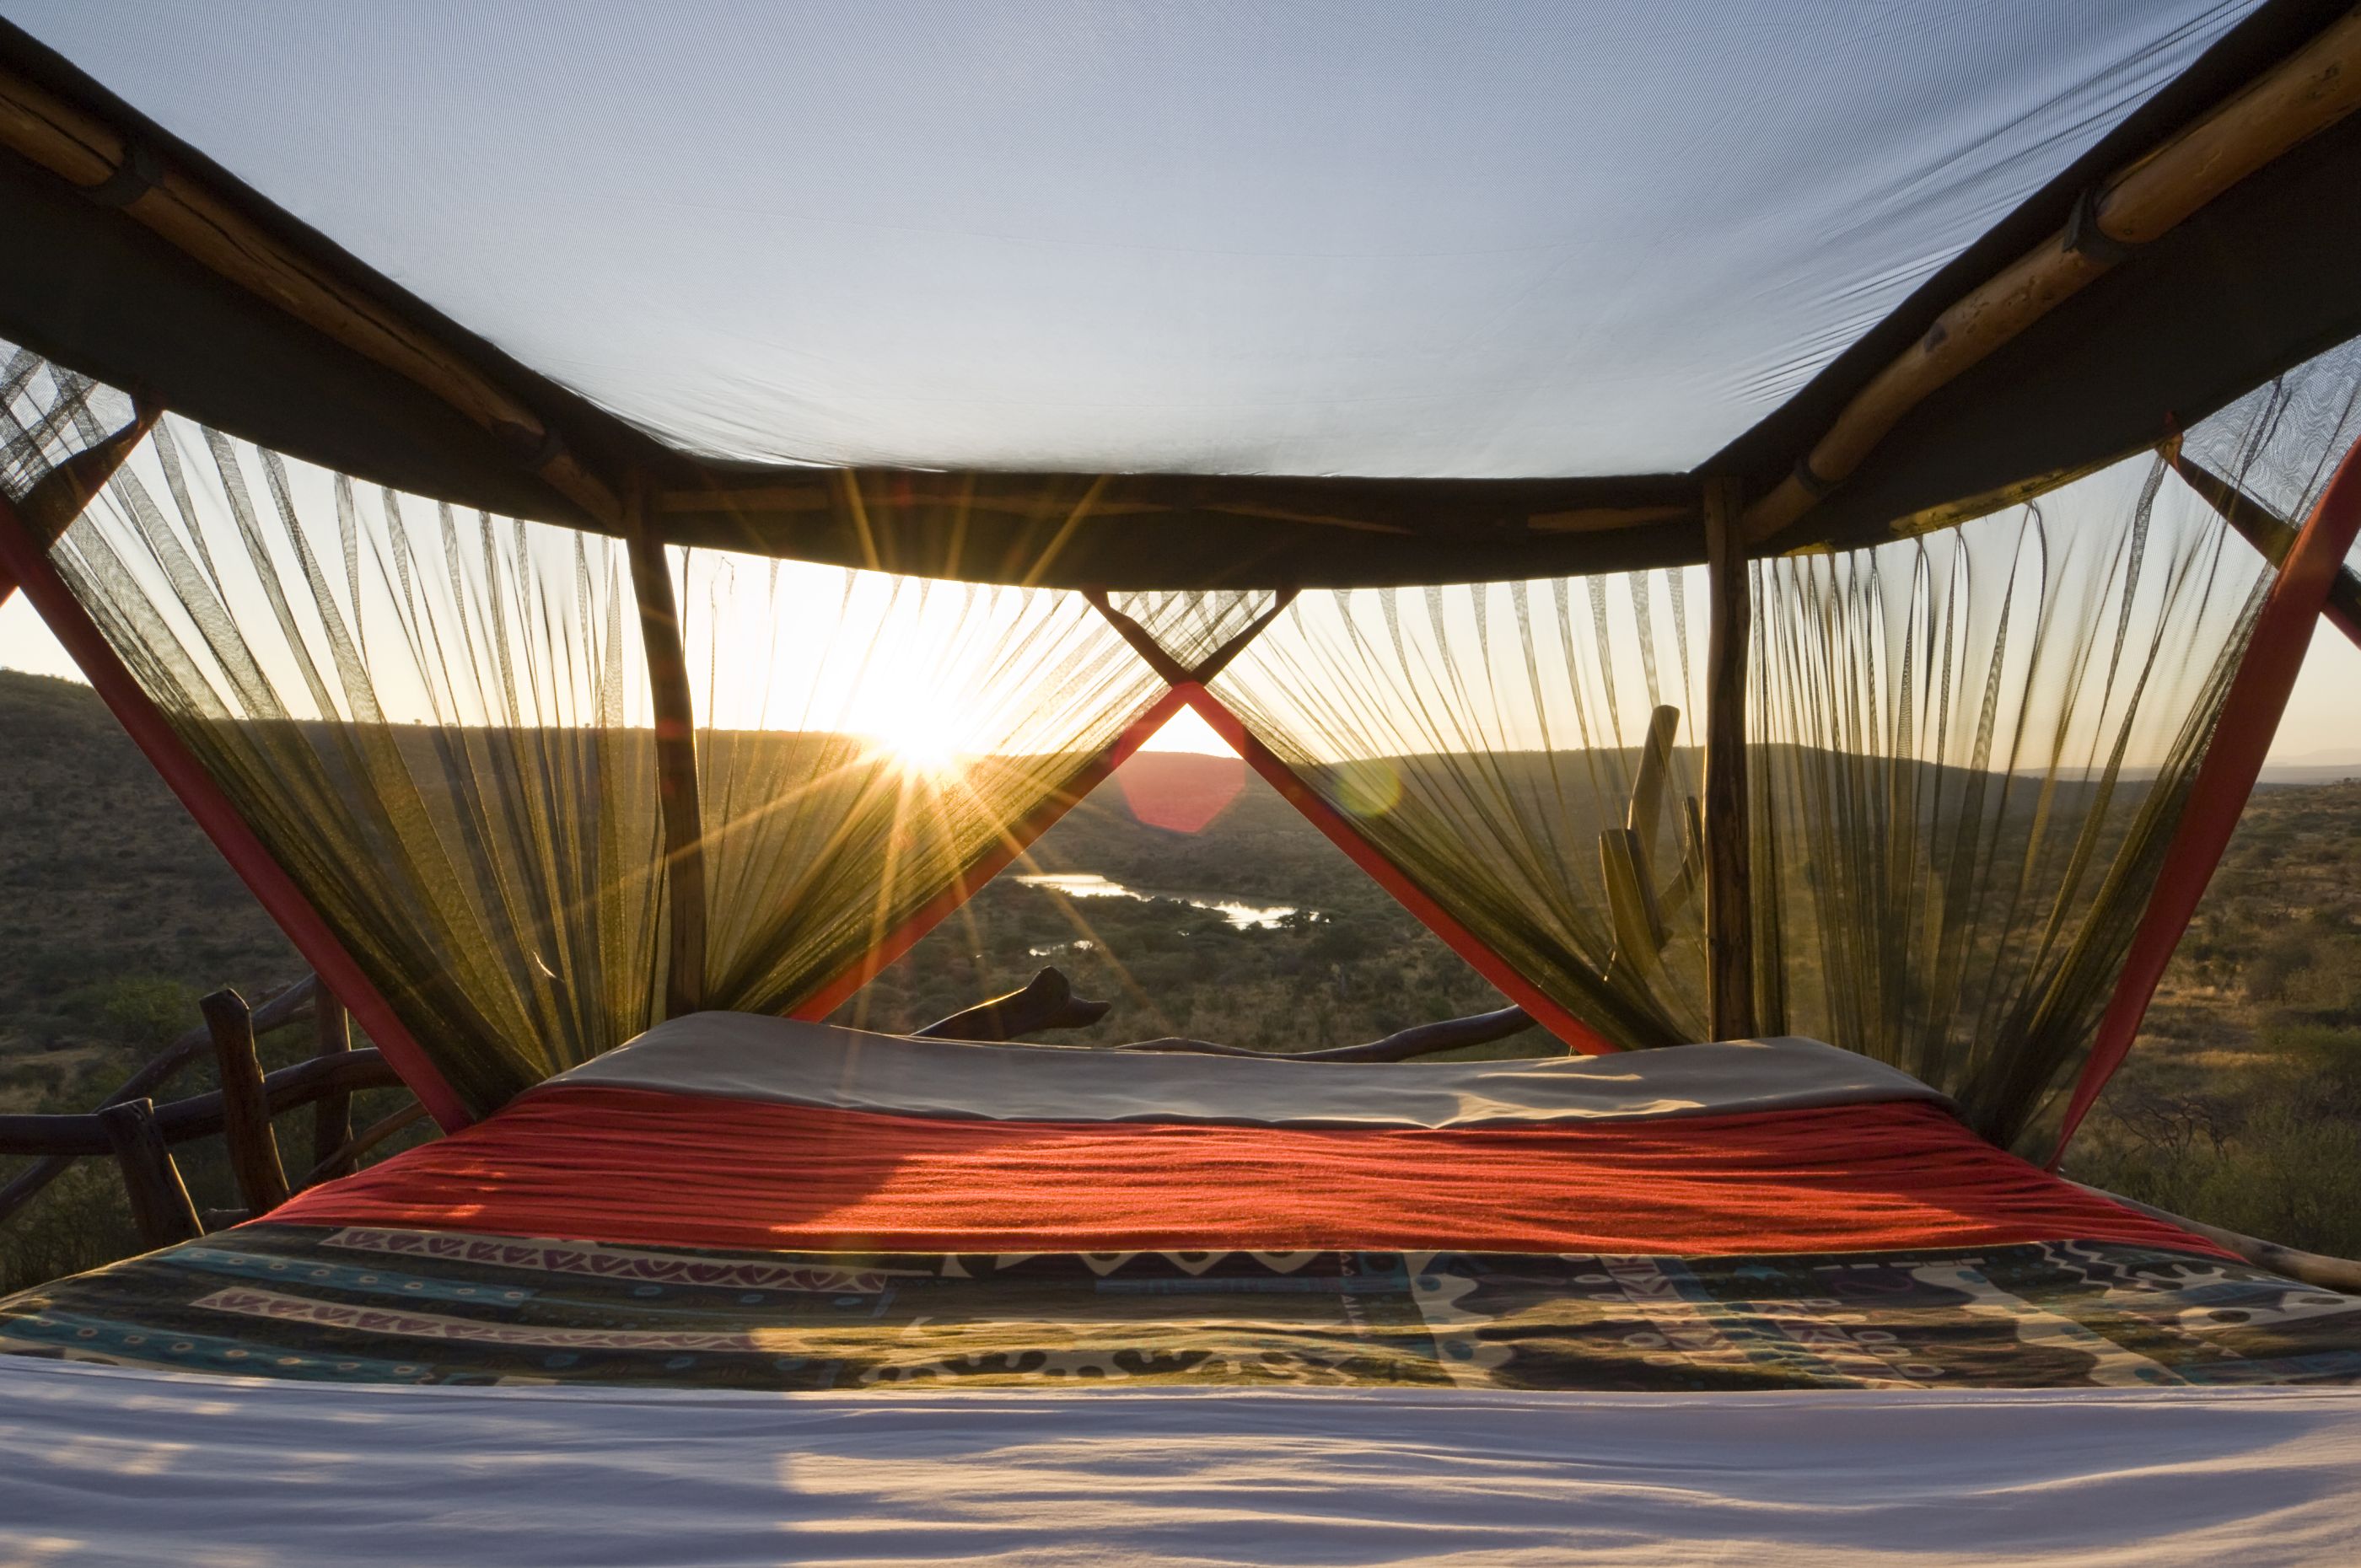 Star bed at Loisaba Bush Camp, Kenya